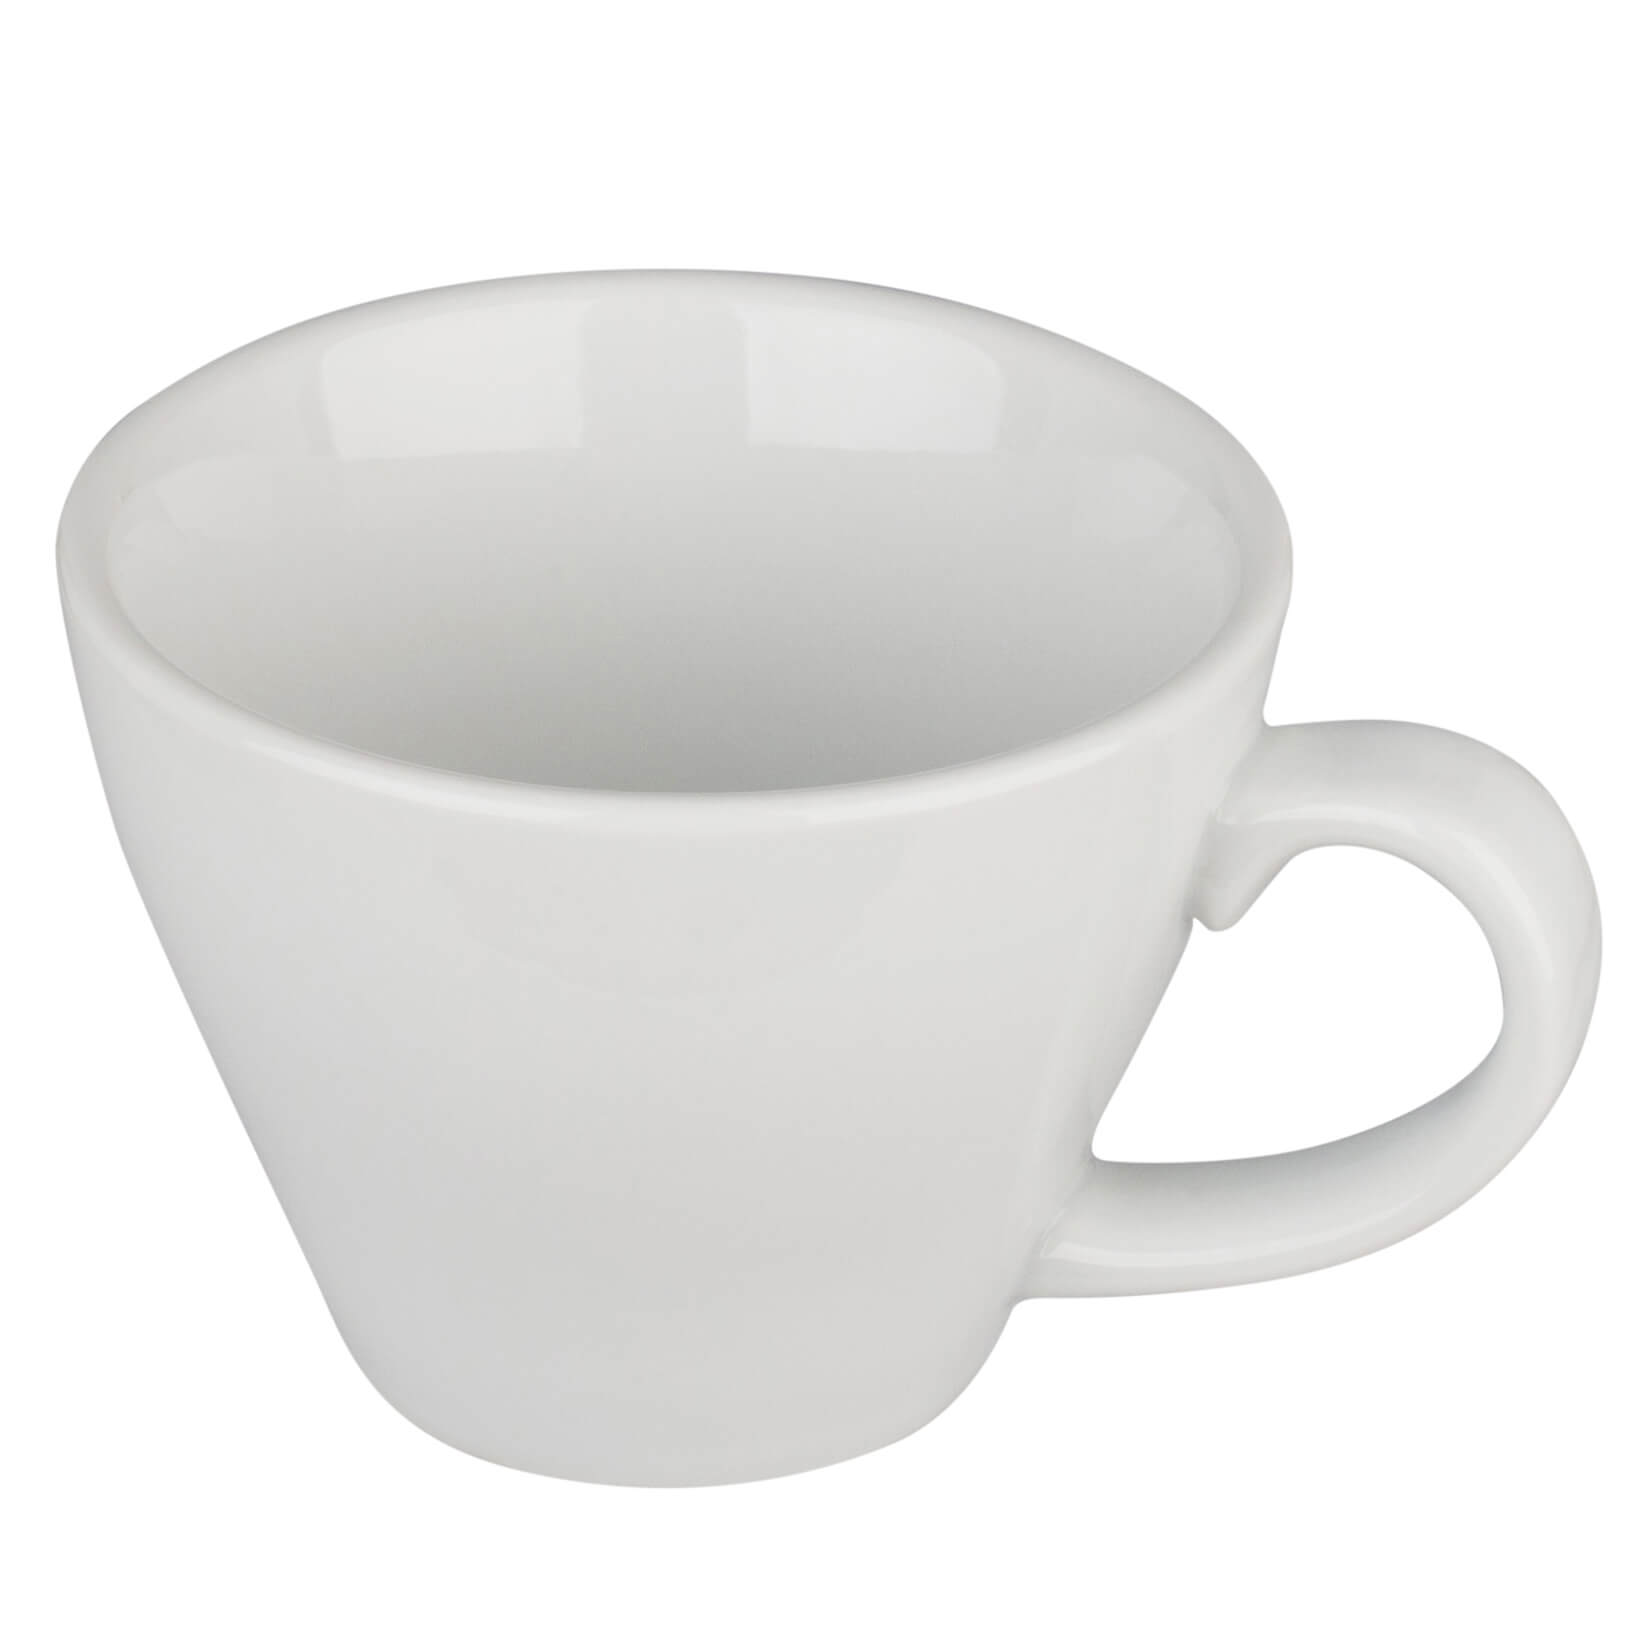 Doppio-, Coffee cup - 0,18l (1 Pc.)